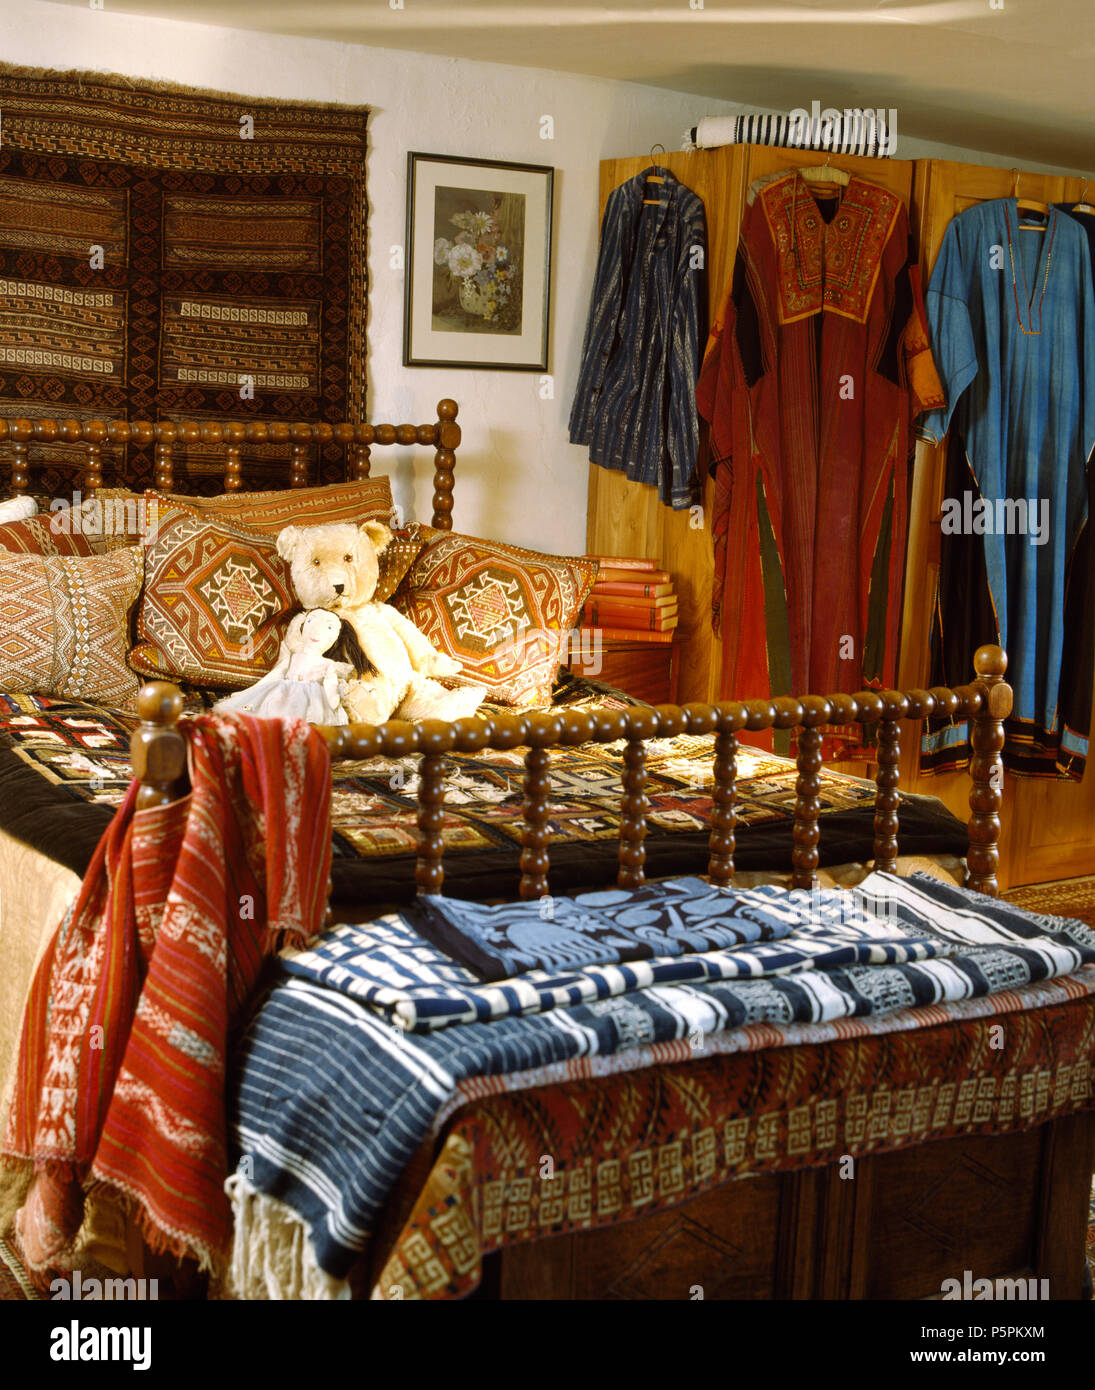 Accrocher de mur au-dessus de lit avec des supports en bois tourné avec des coussins empilés dans la chambre pleine de robes ethniques et tapis Banque D'Images